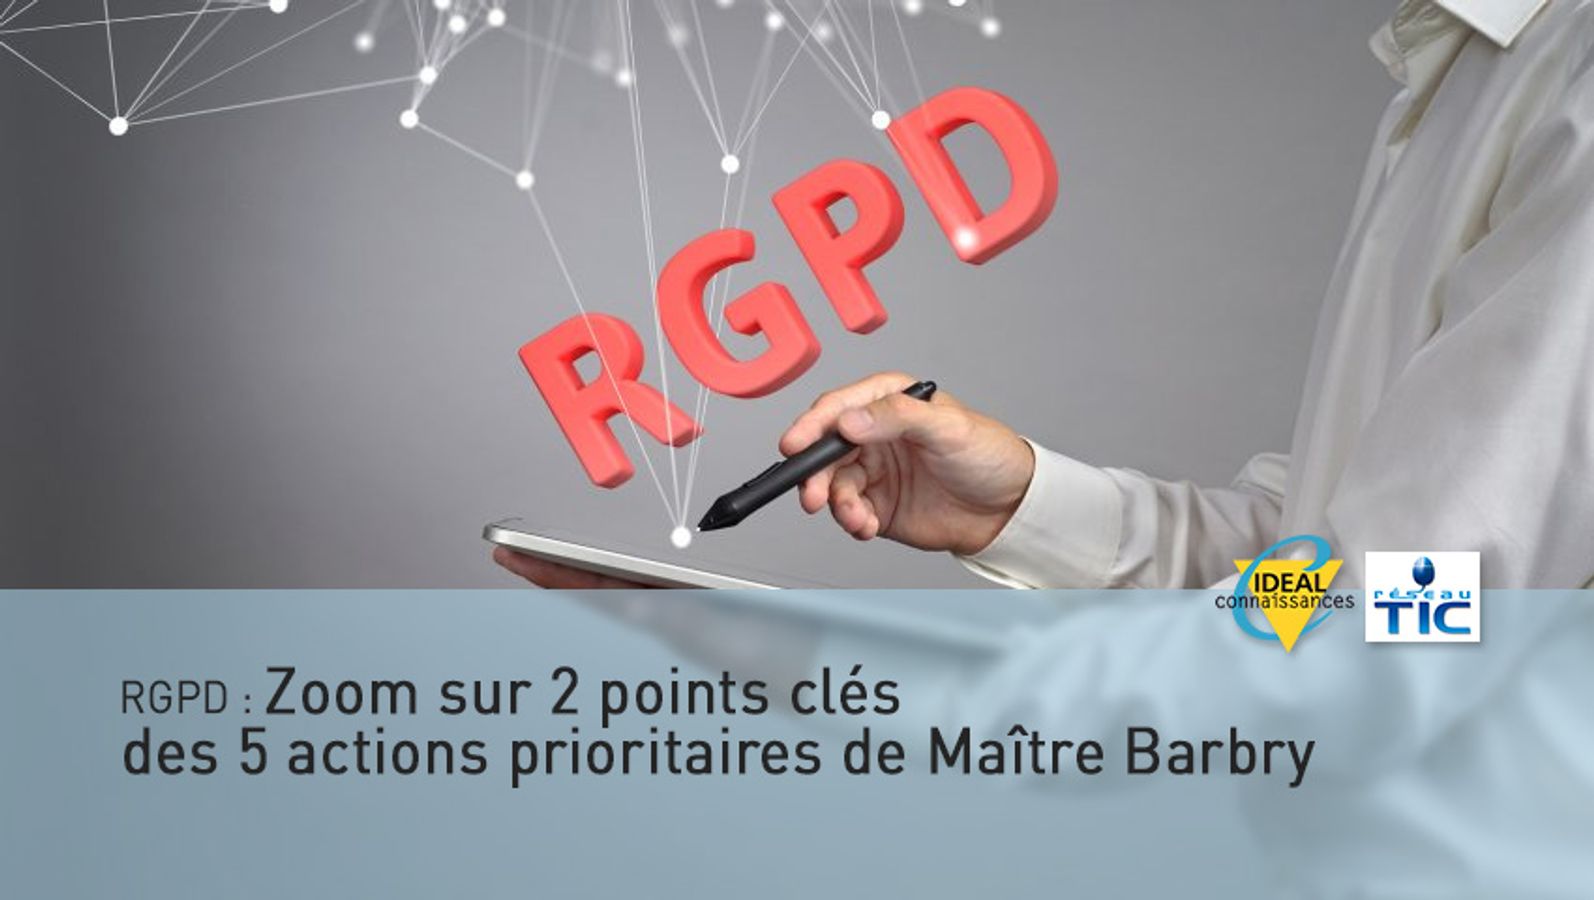 RGPD : Zoom sur 2 points clés des 5 actions prioritaires de Maître Barbry